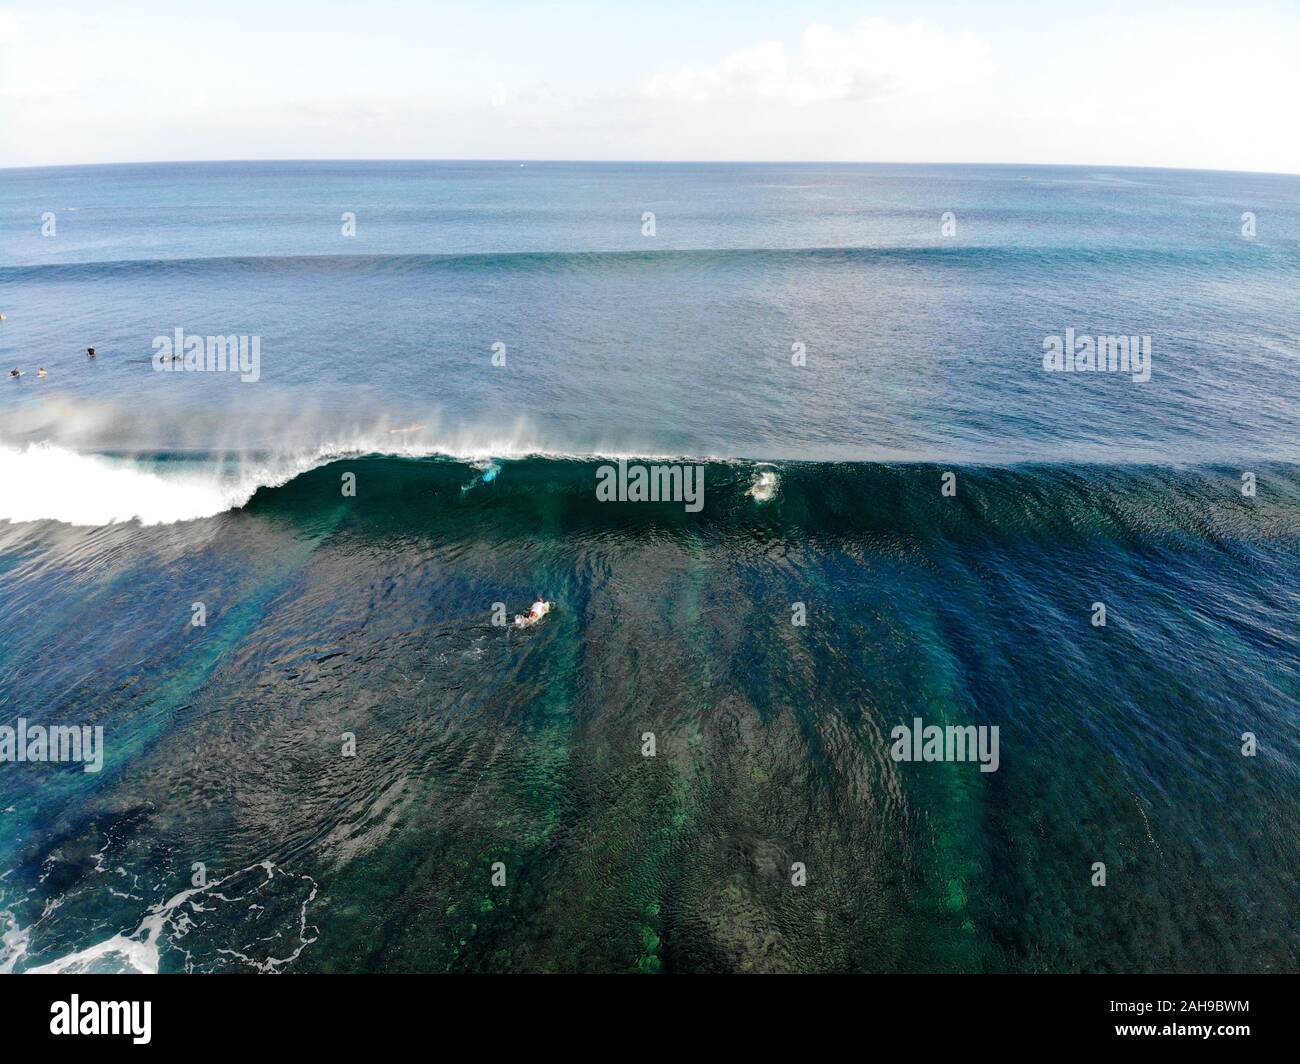 Vue aérienne de surfers de leur conseil d'attraper les vagues, de grosses vagues, l'océan bleu tropical, Bali, Indonésie Banque D'Images